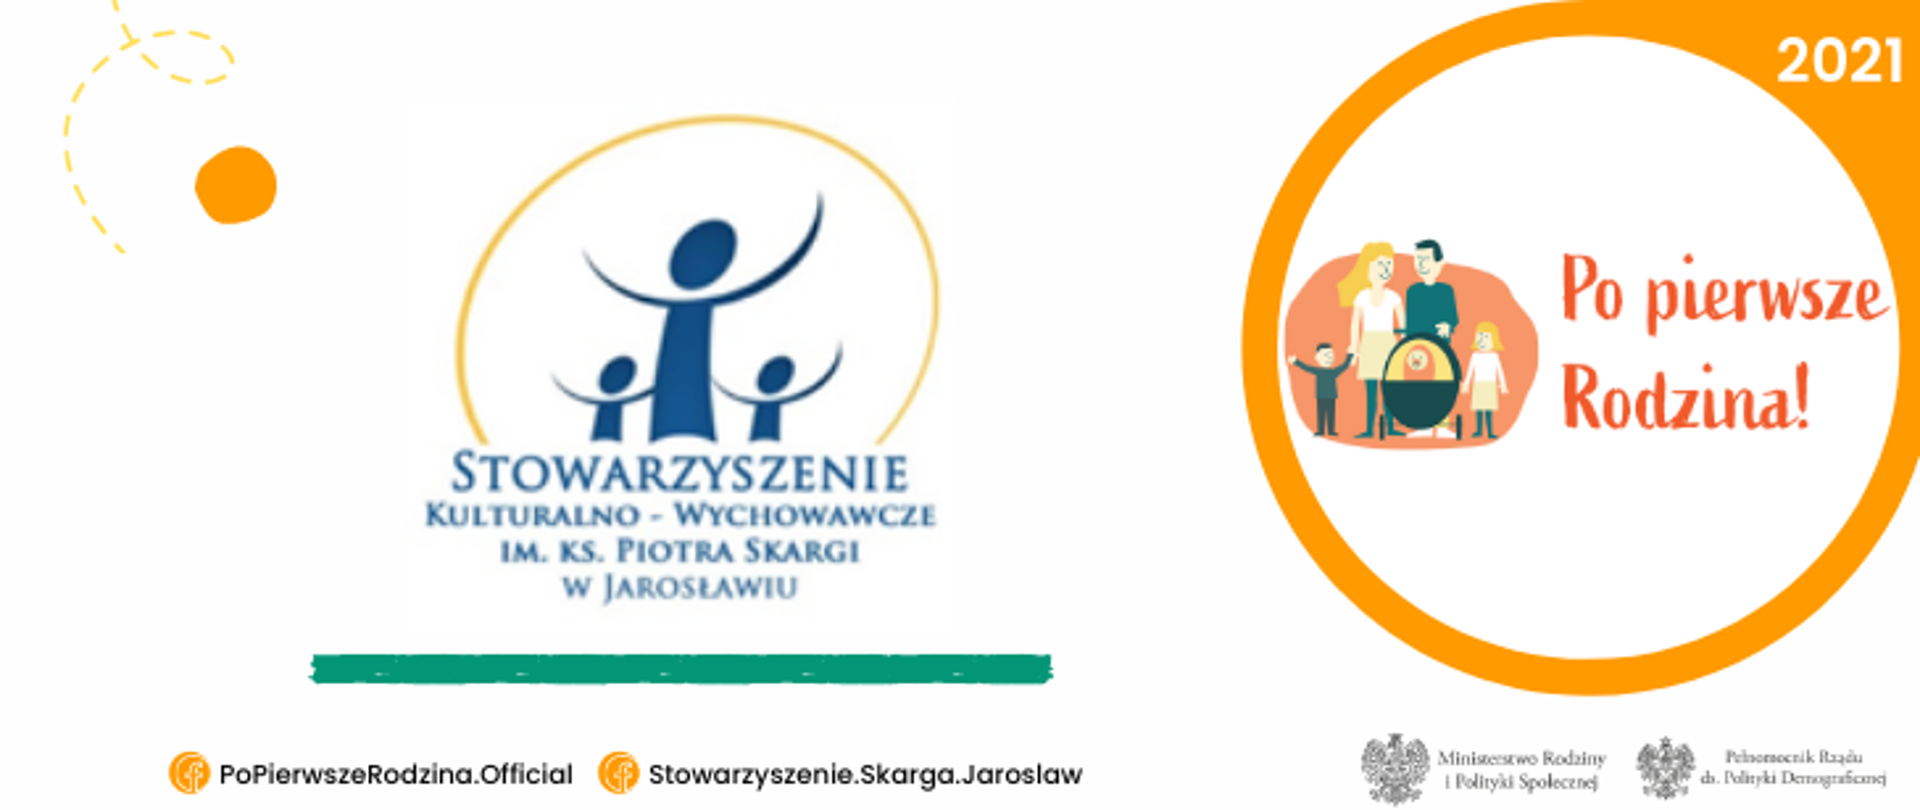 PPR2021_Stowarzyszenie Kulturalno-Wychowawcze_w Jarosławiu